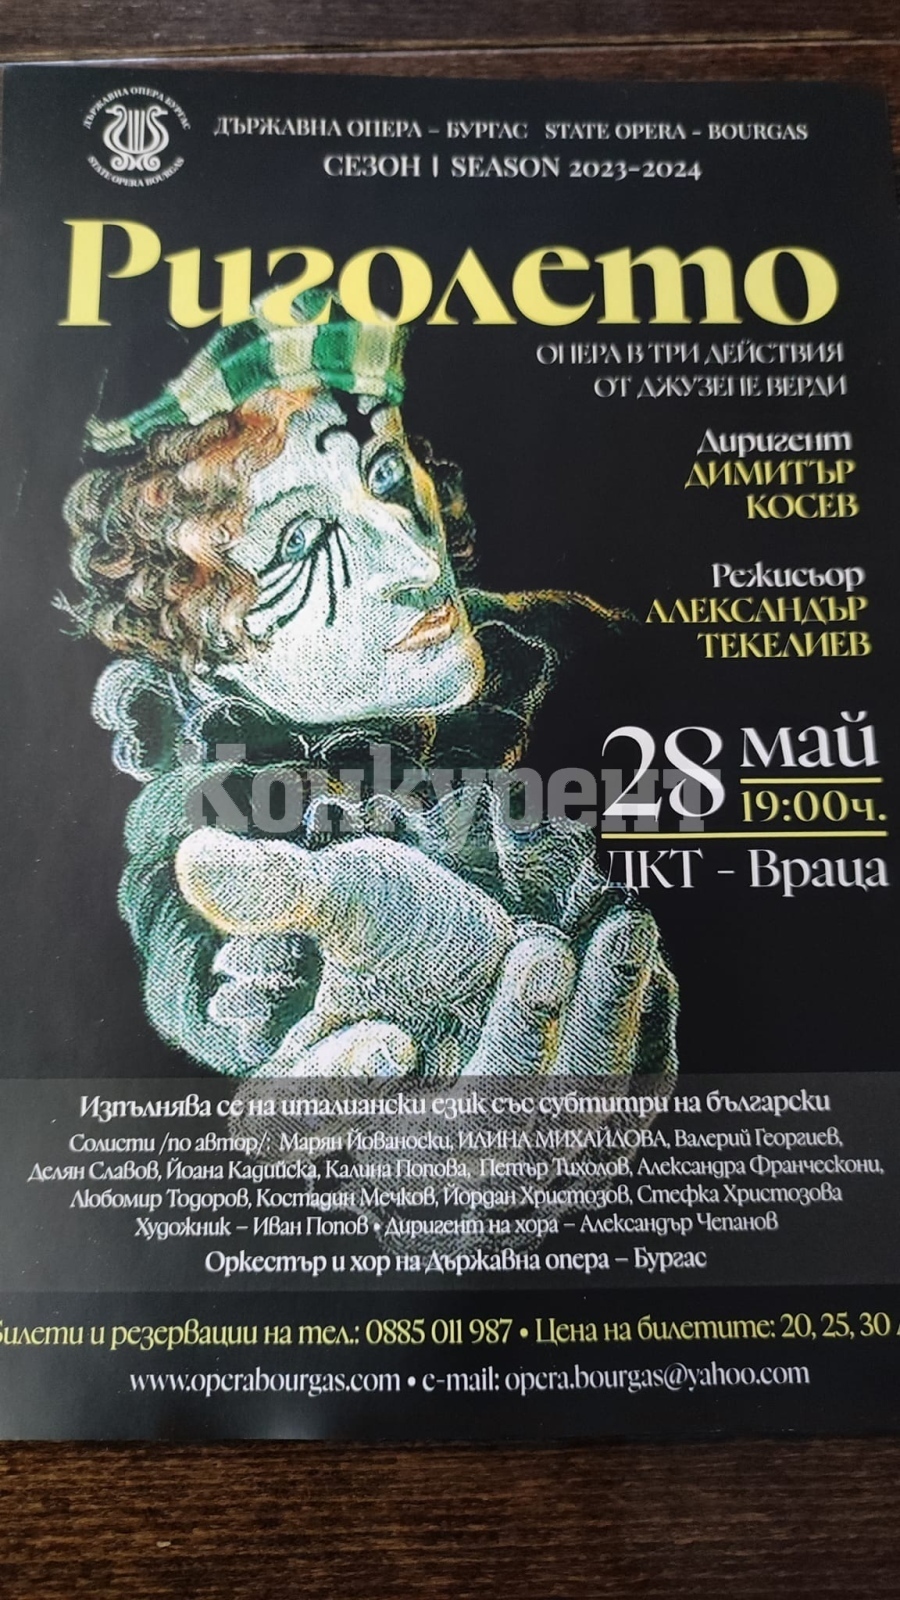 Нестандартният прочит на операта на Джузепе Верди ще се проведе във Враца 